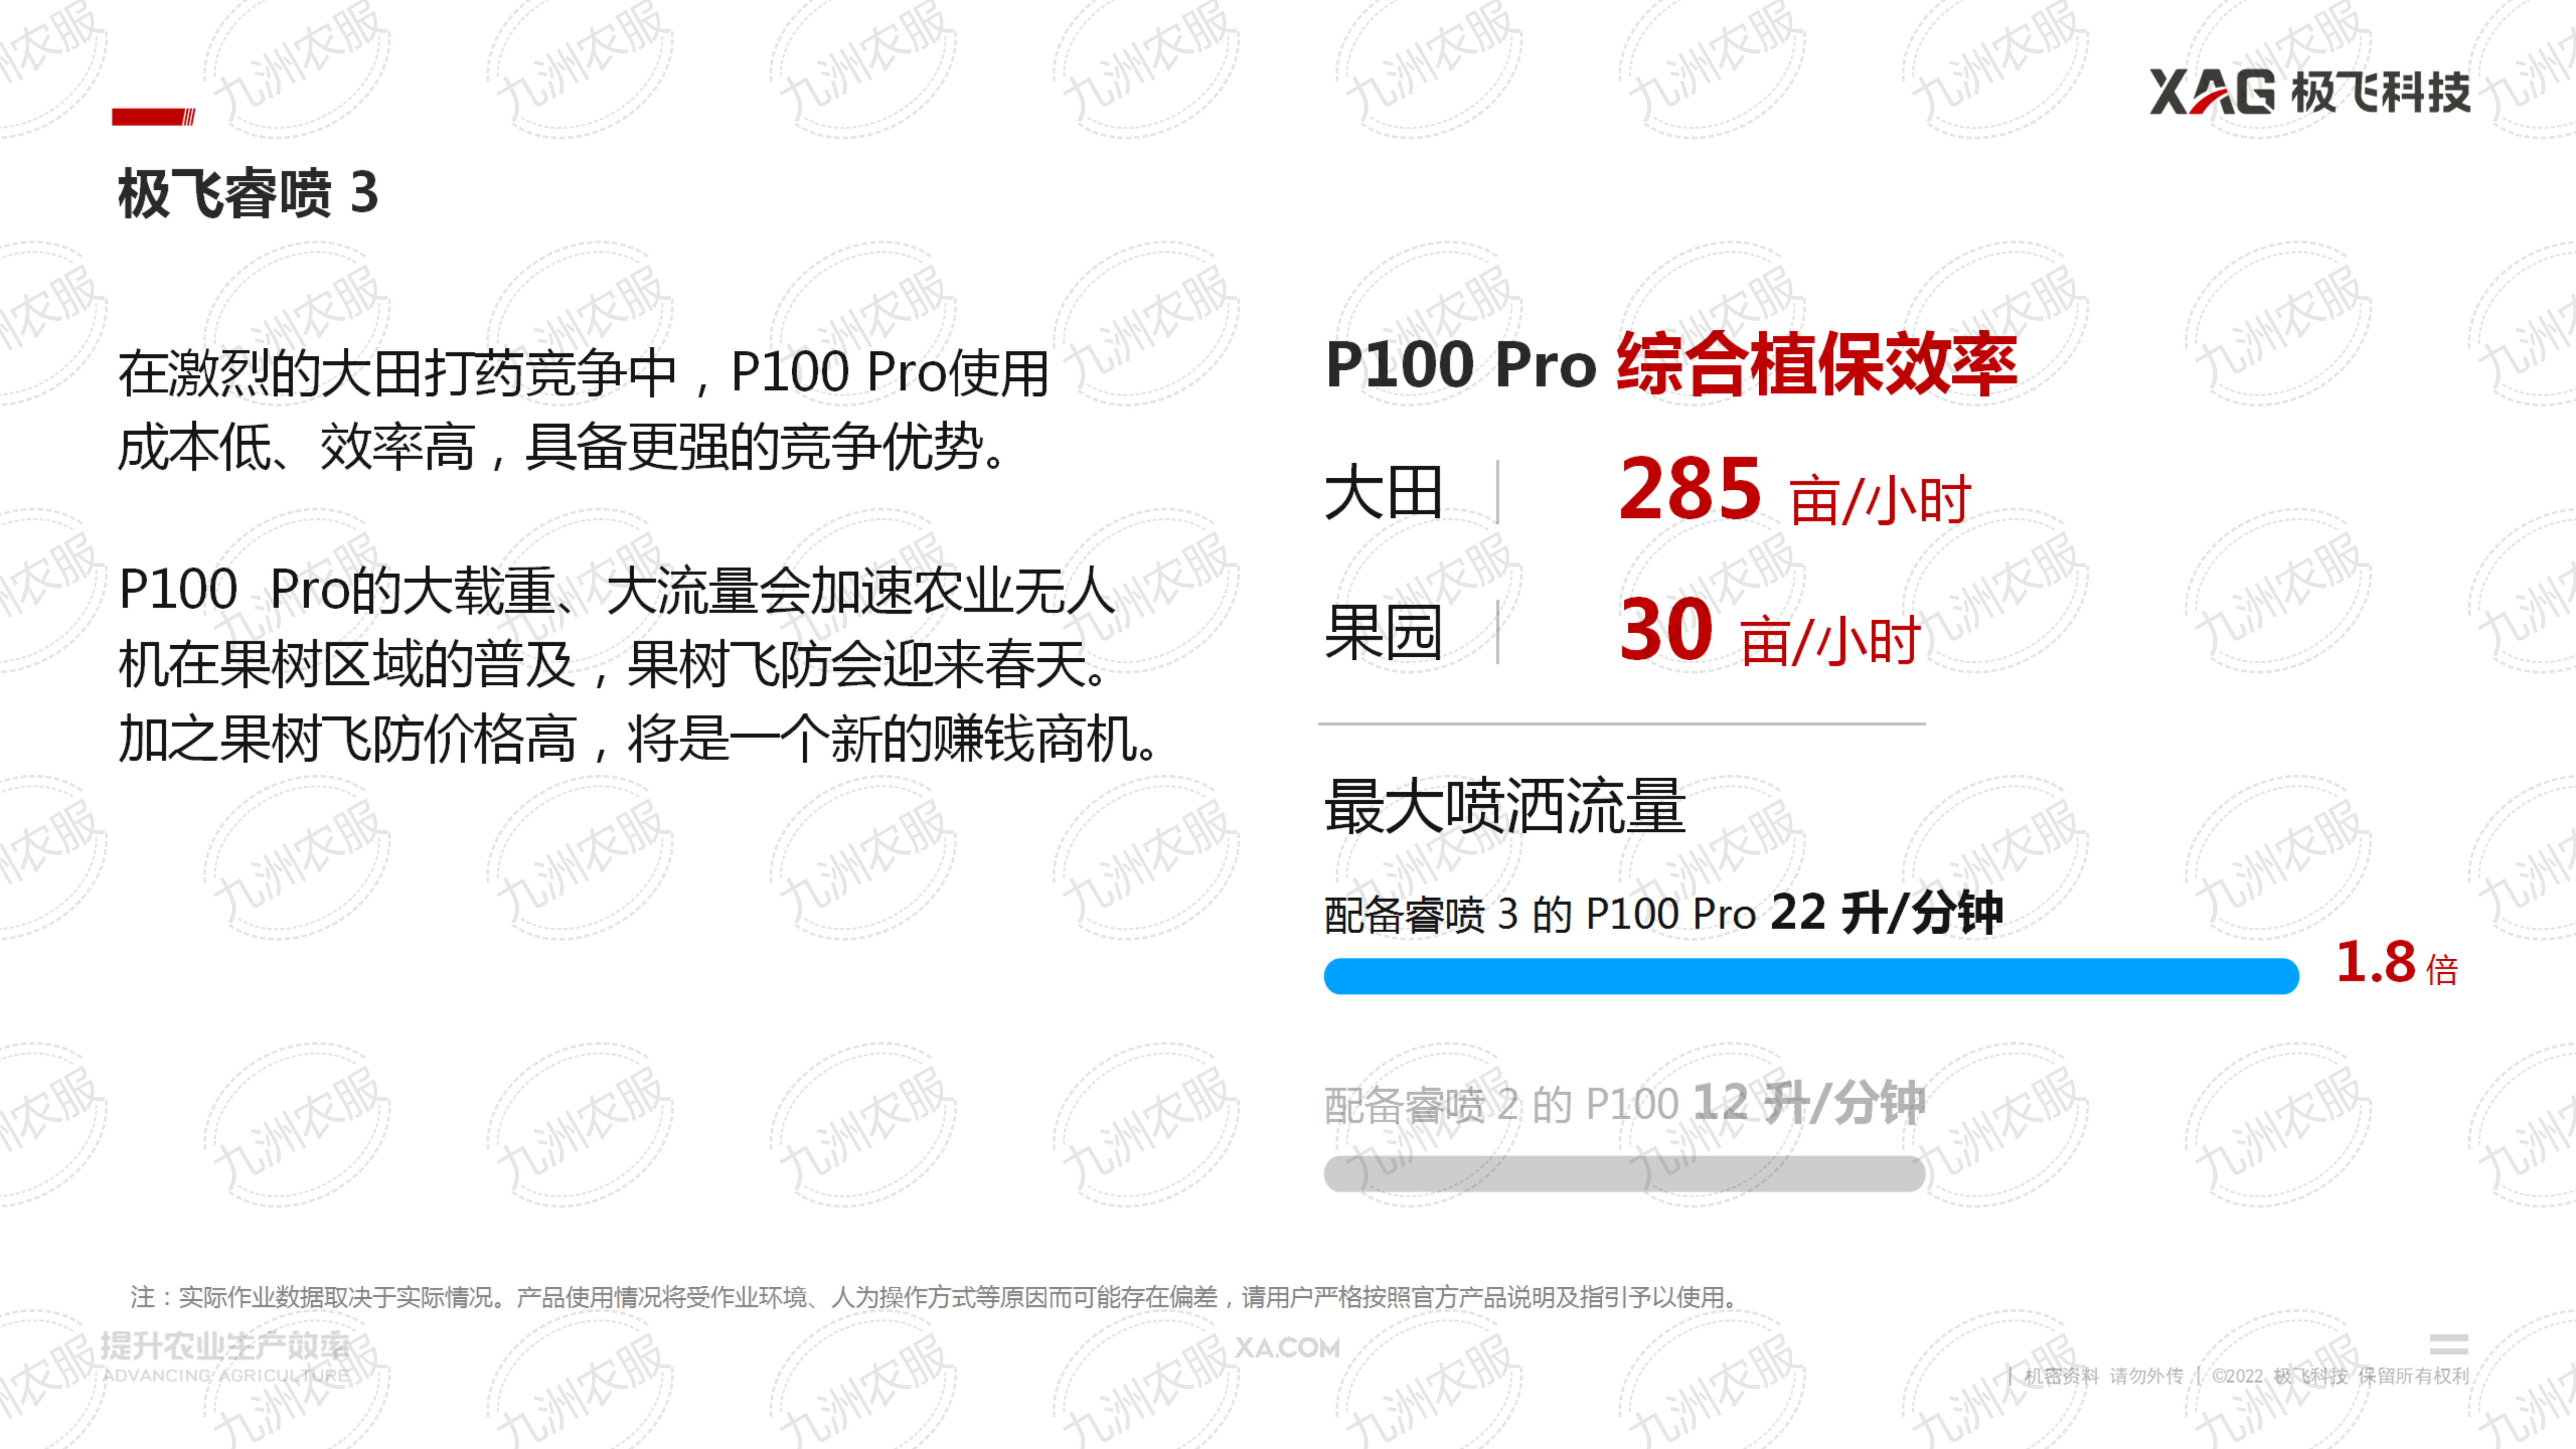 極飛 P100 Pro 農業無人飛機推介會課件_13.png